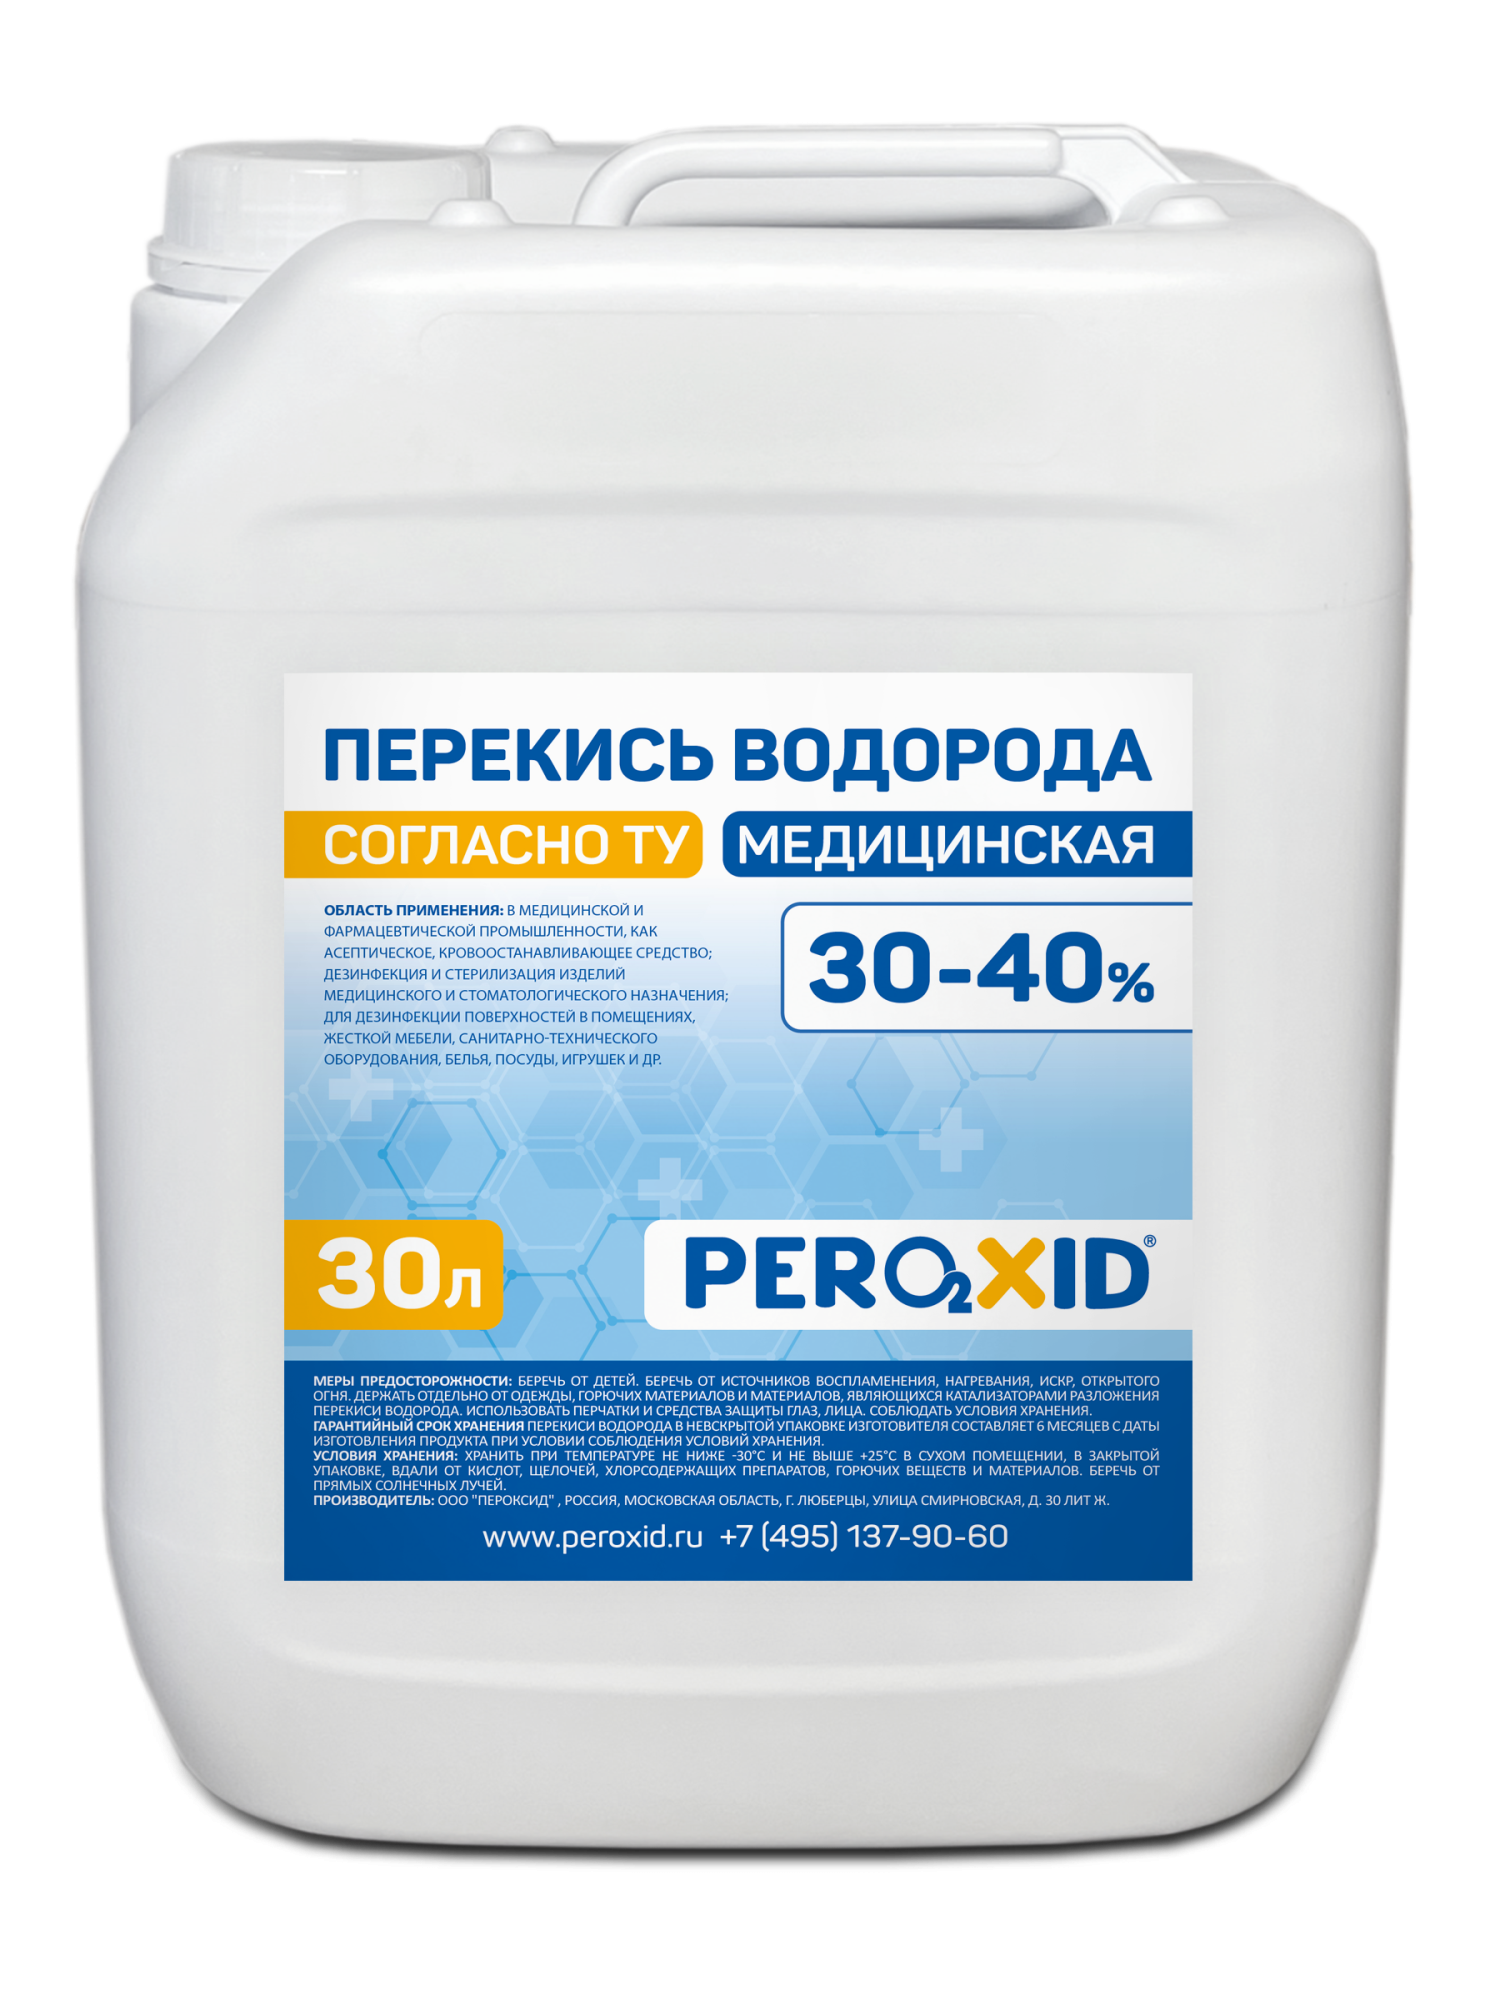 Перекись водорода медицинская PEROXID 30-40% марка  ТУ 2123-001-25665344-2008 30 л/34 кг